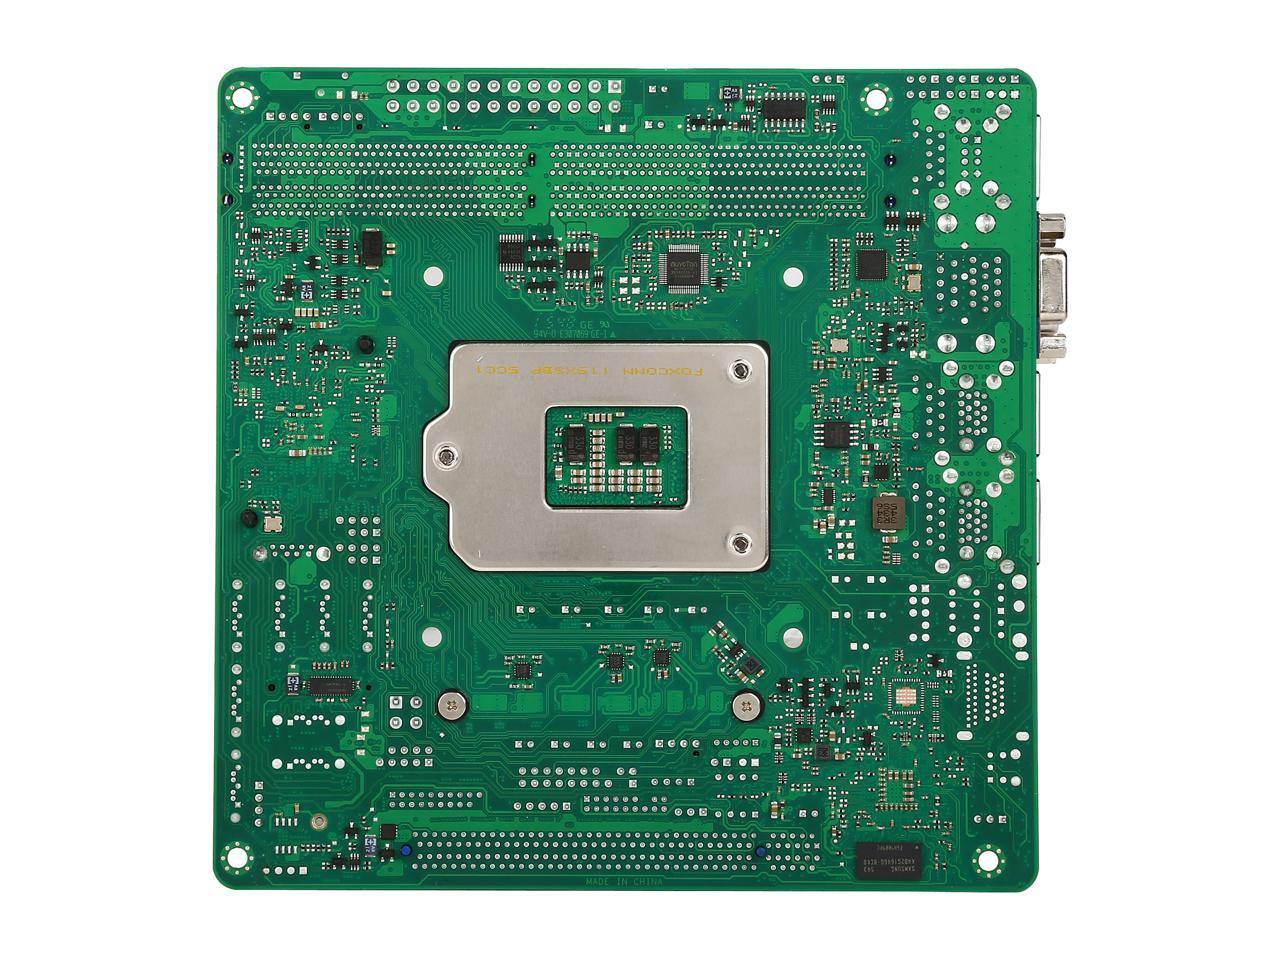 ASRock E3C236D2I Mini ITX Server Motherboard LGA 1151 Intel C236